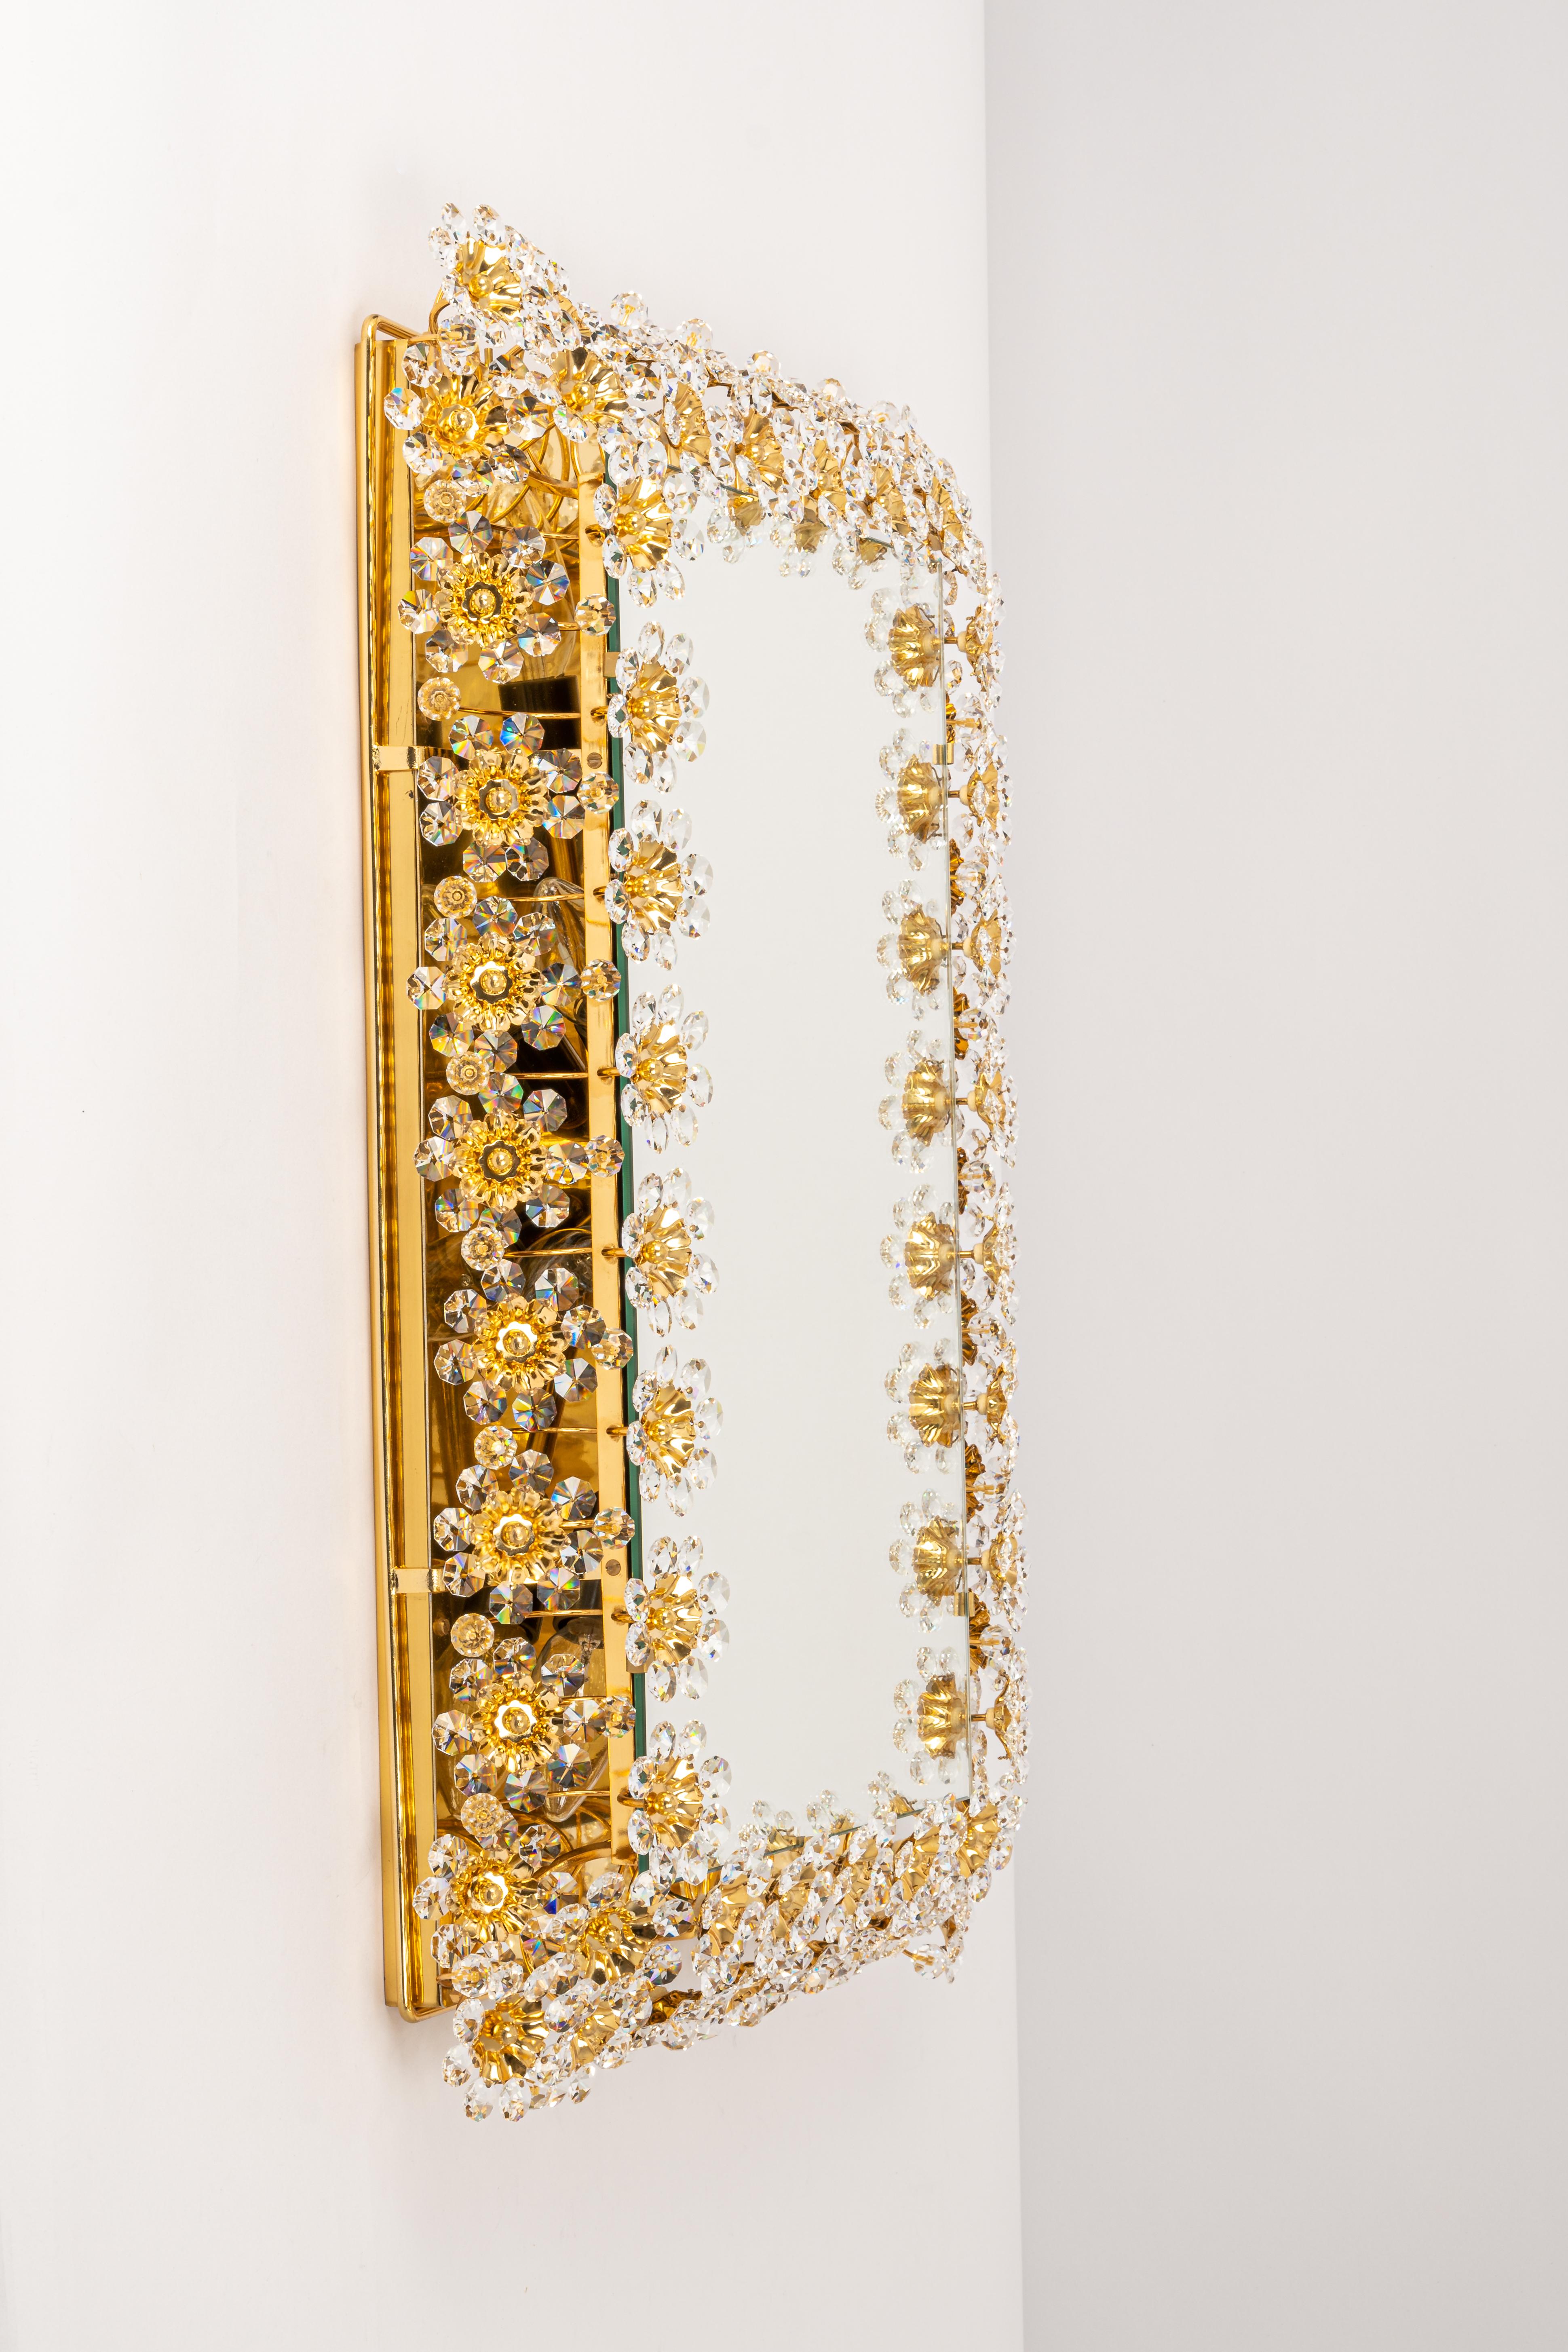 Ein wunderschöner und hochwertiger vergoldeter Wandspiegel von Palwa (Palme & Walter), Deutschland, 1970er Jahre
Sie besteht aus einem Rahmen aus 24 Karat vergoldetem Messing, der mit Hunderten von geschliffenem Kristallglas verziert ist.